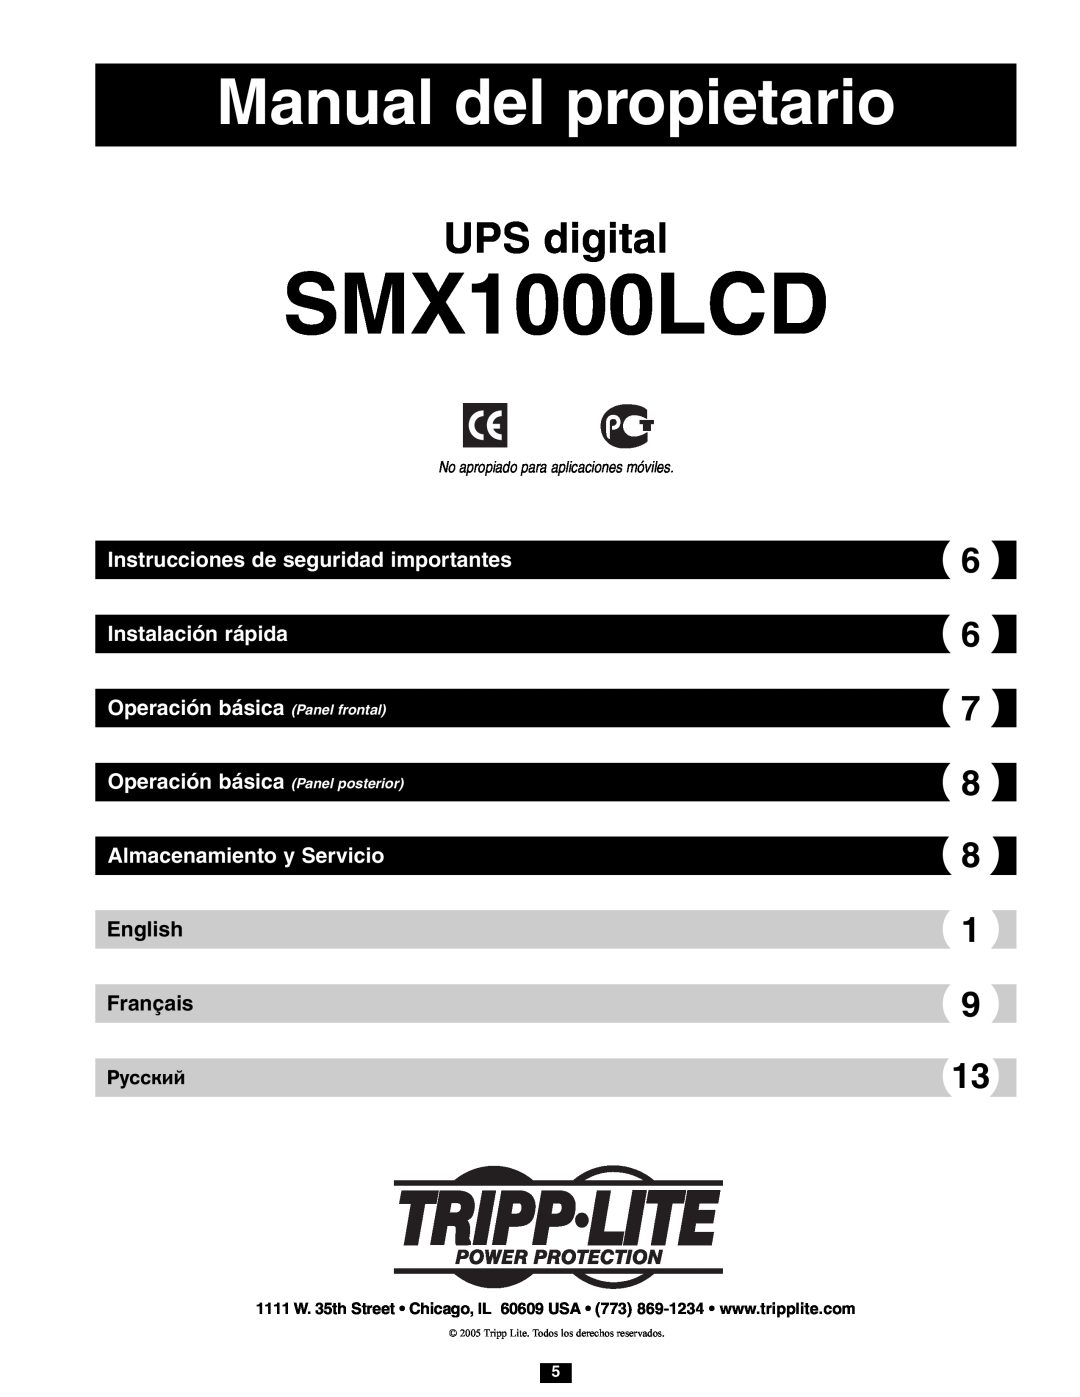 Tripp Lite SMX1000LCD Manual del propietario, UPS digital, Instrucciones de seguridad importantes Instalación rápida 